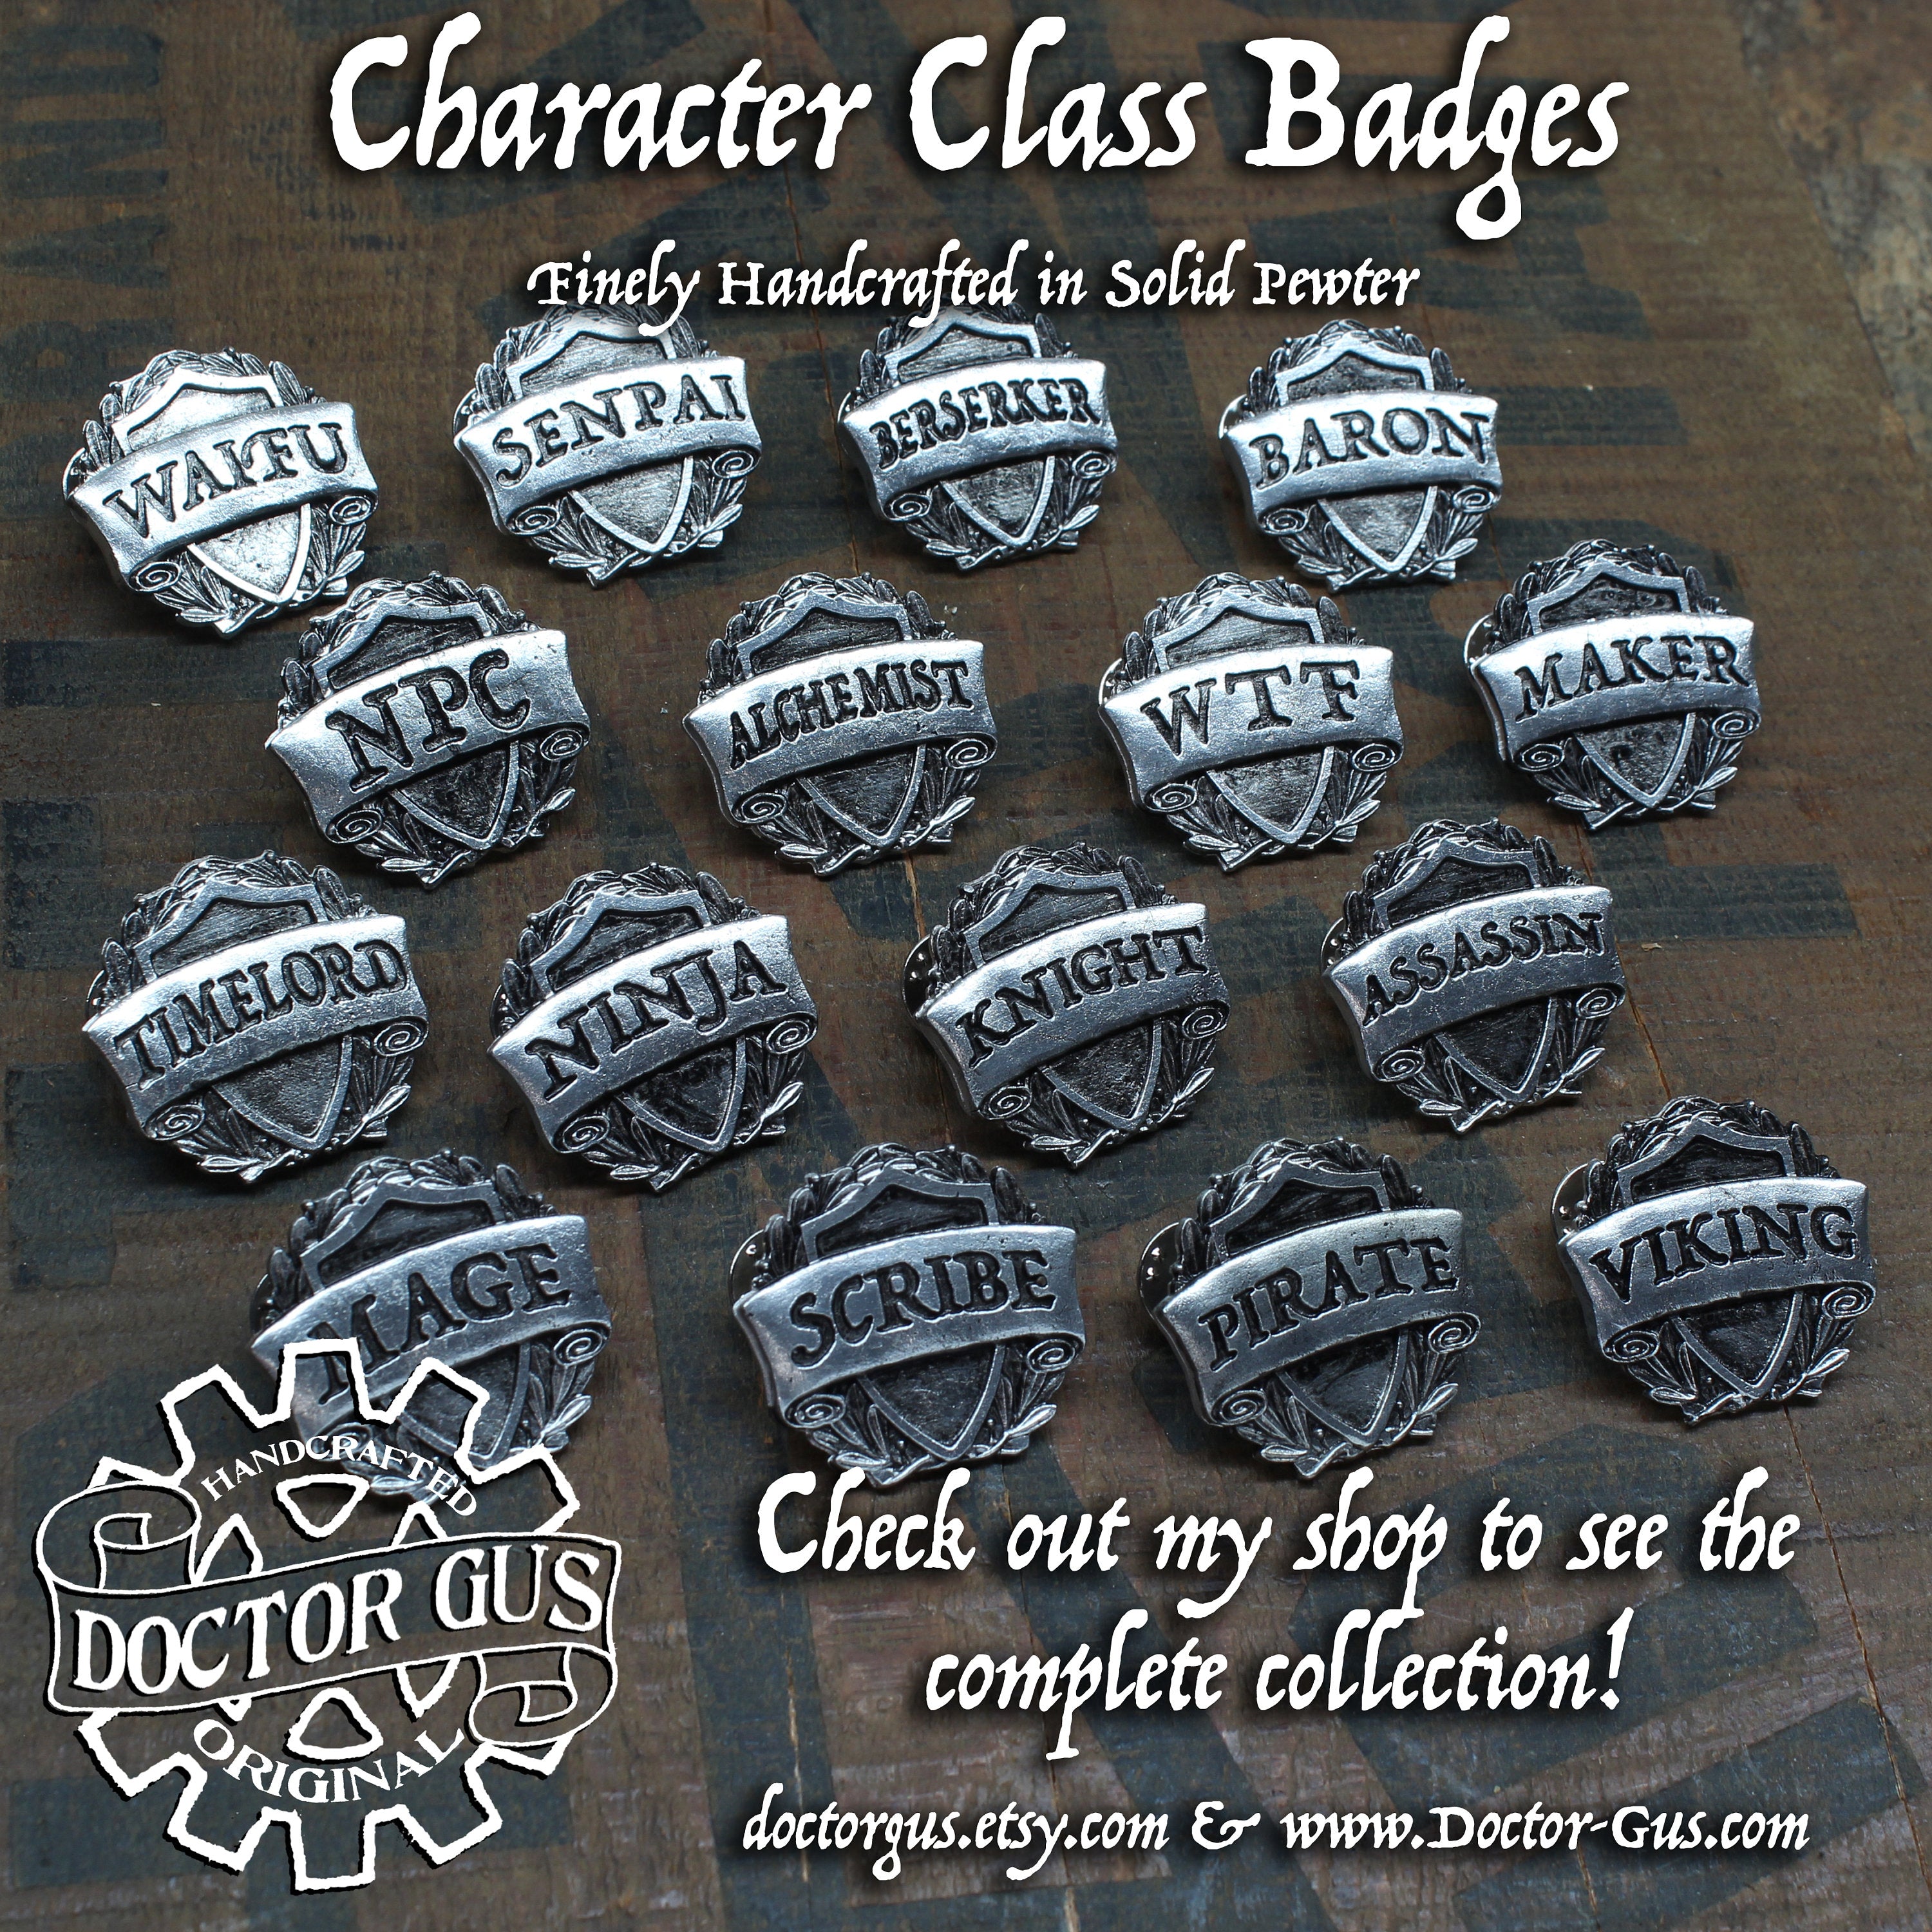 Paladin Badge - RPG Character Class Pin